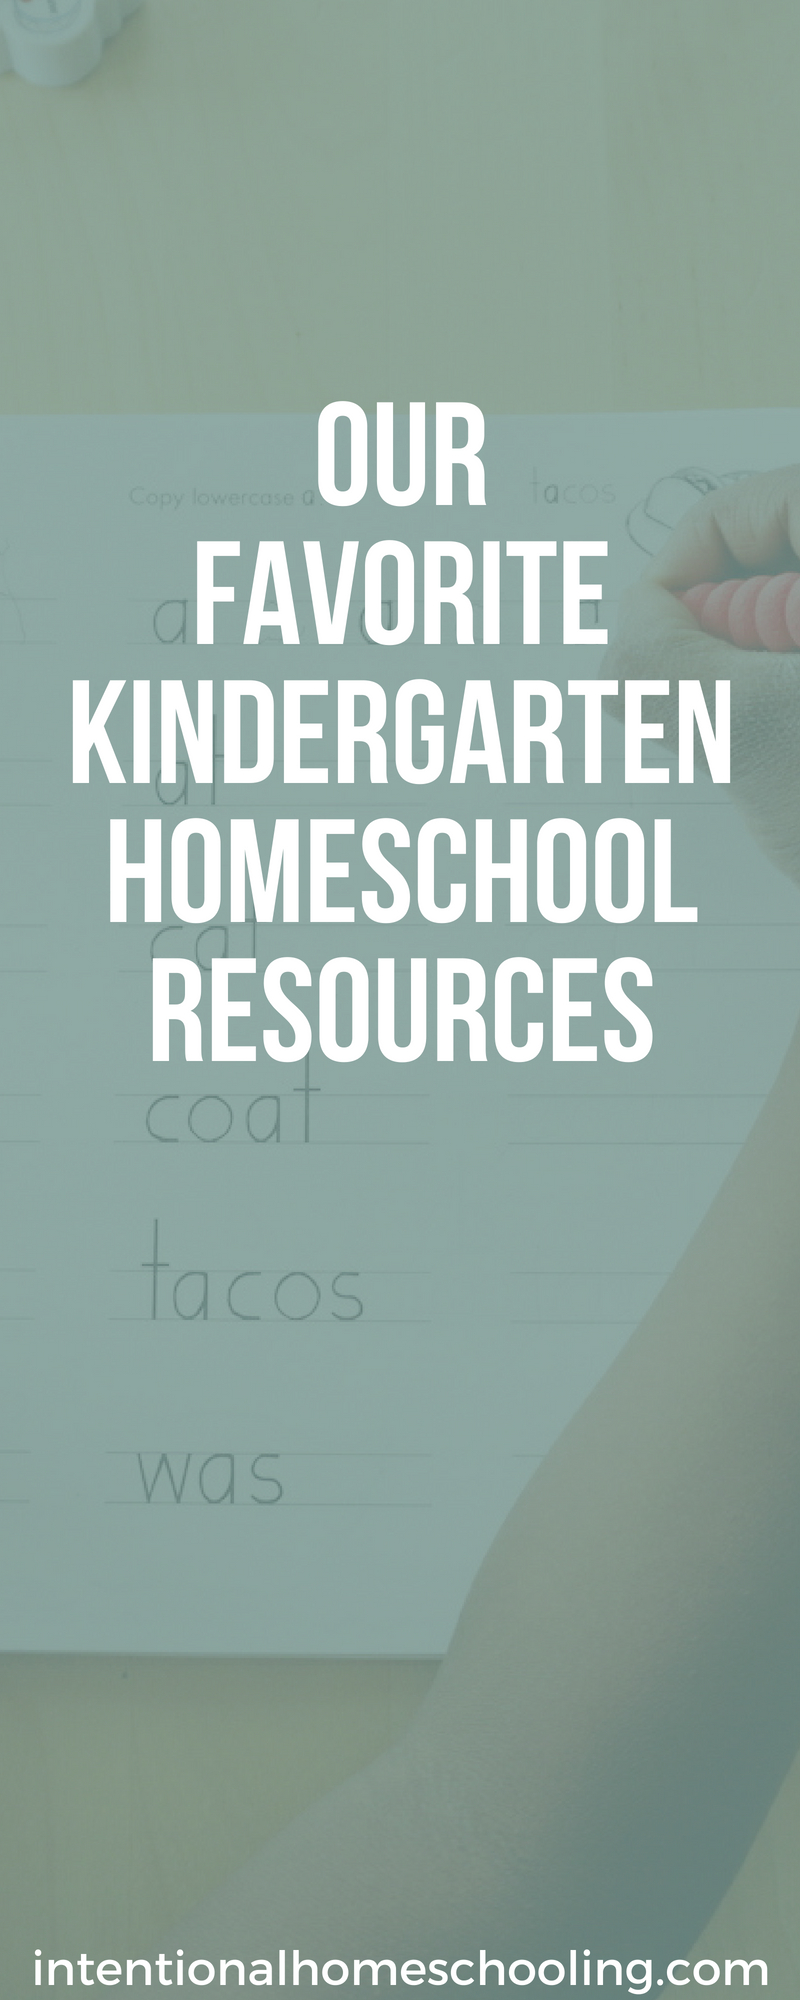 Our Favorite Kindergarten Homeschool Resources